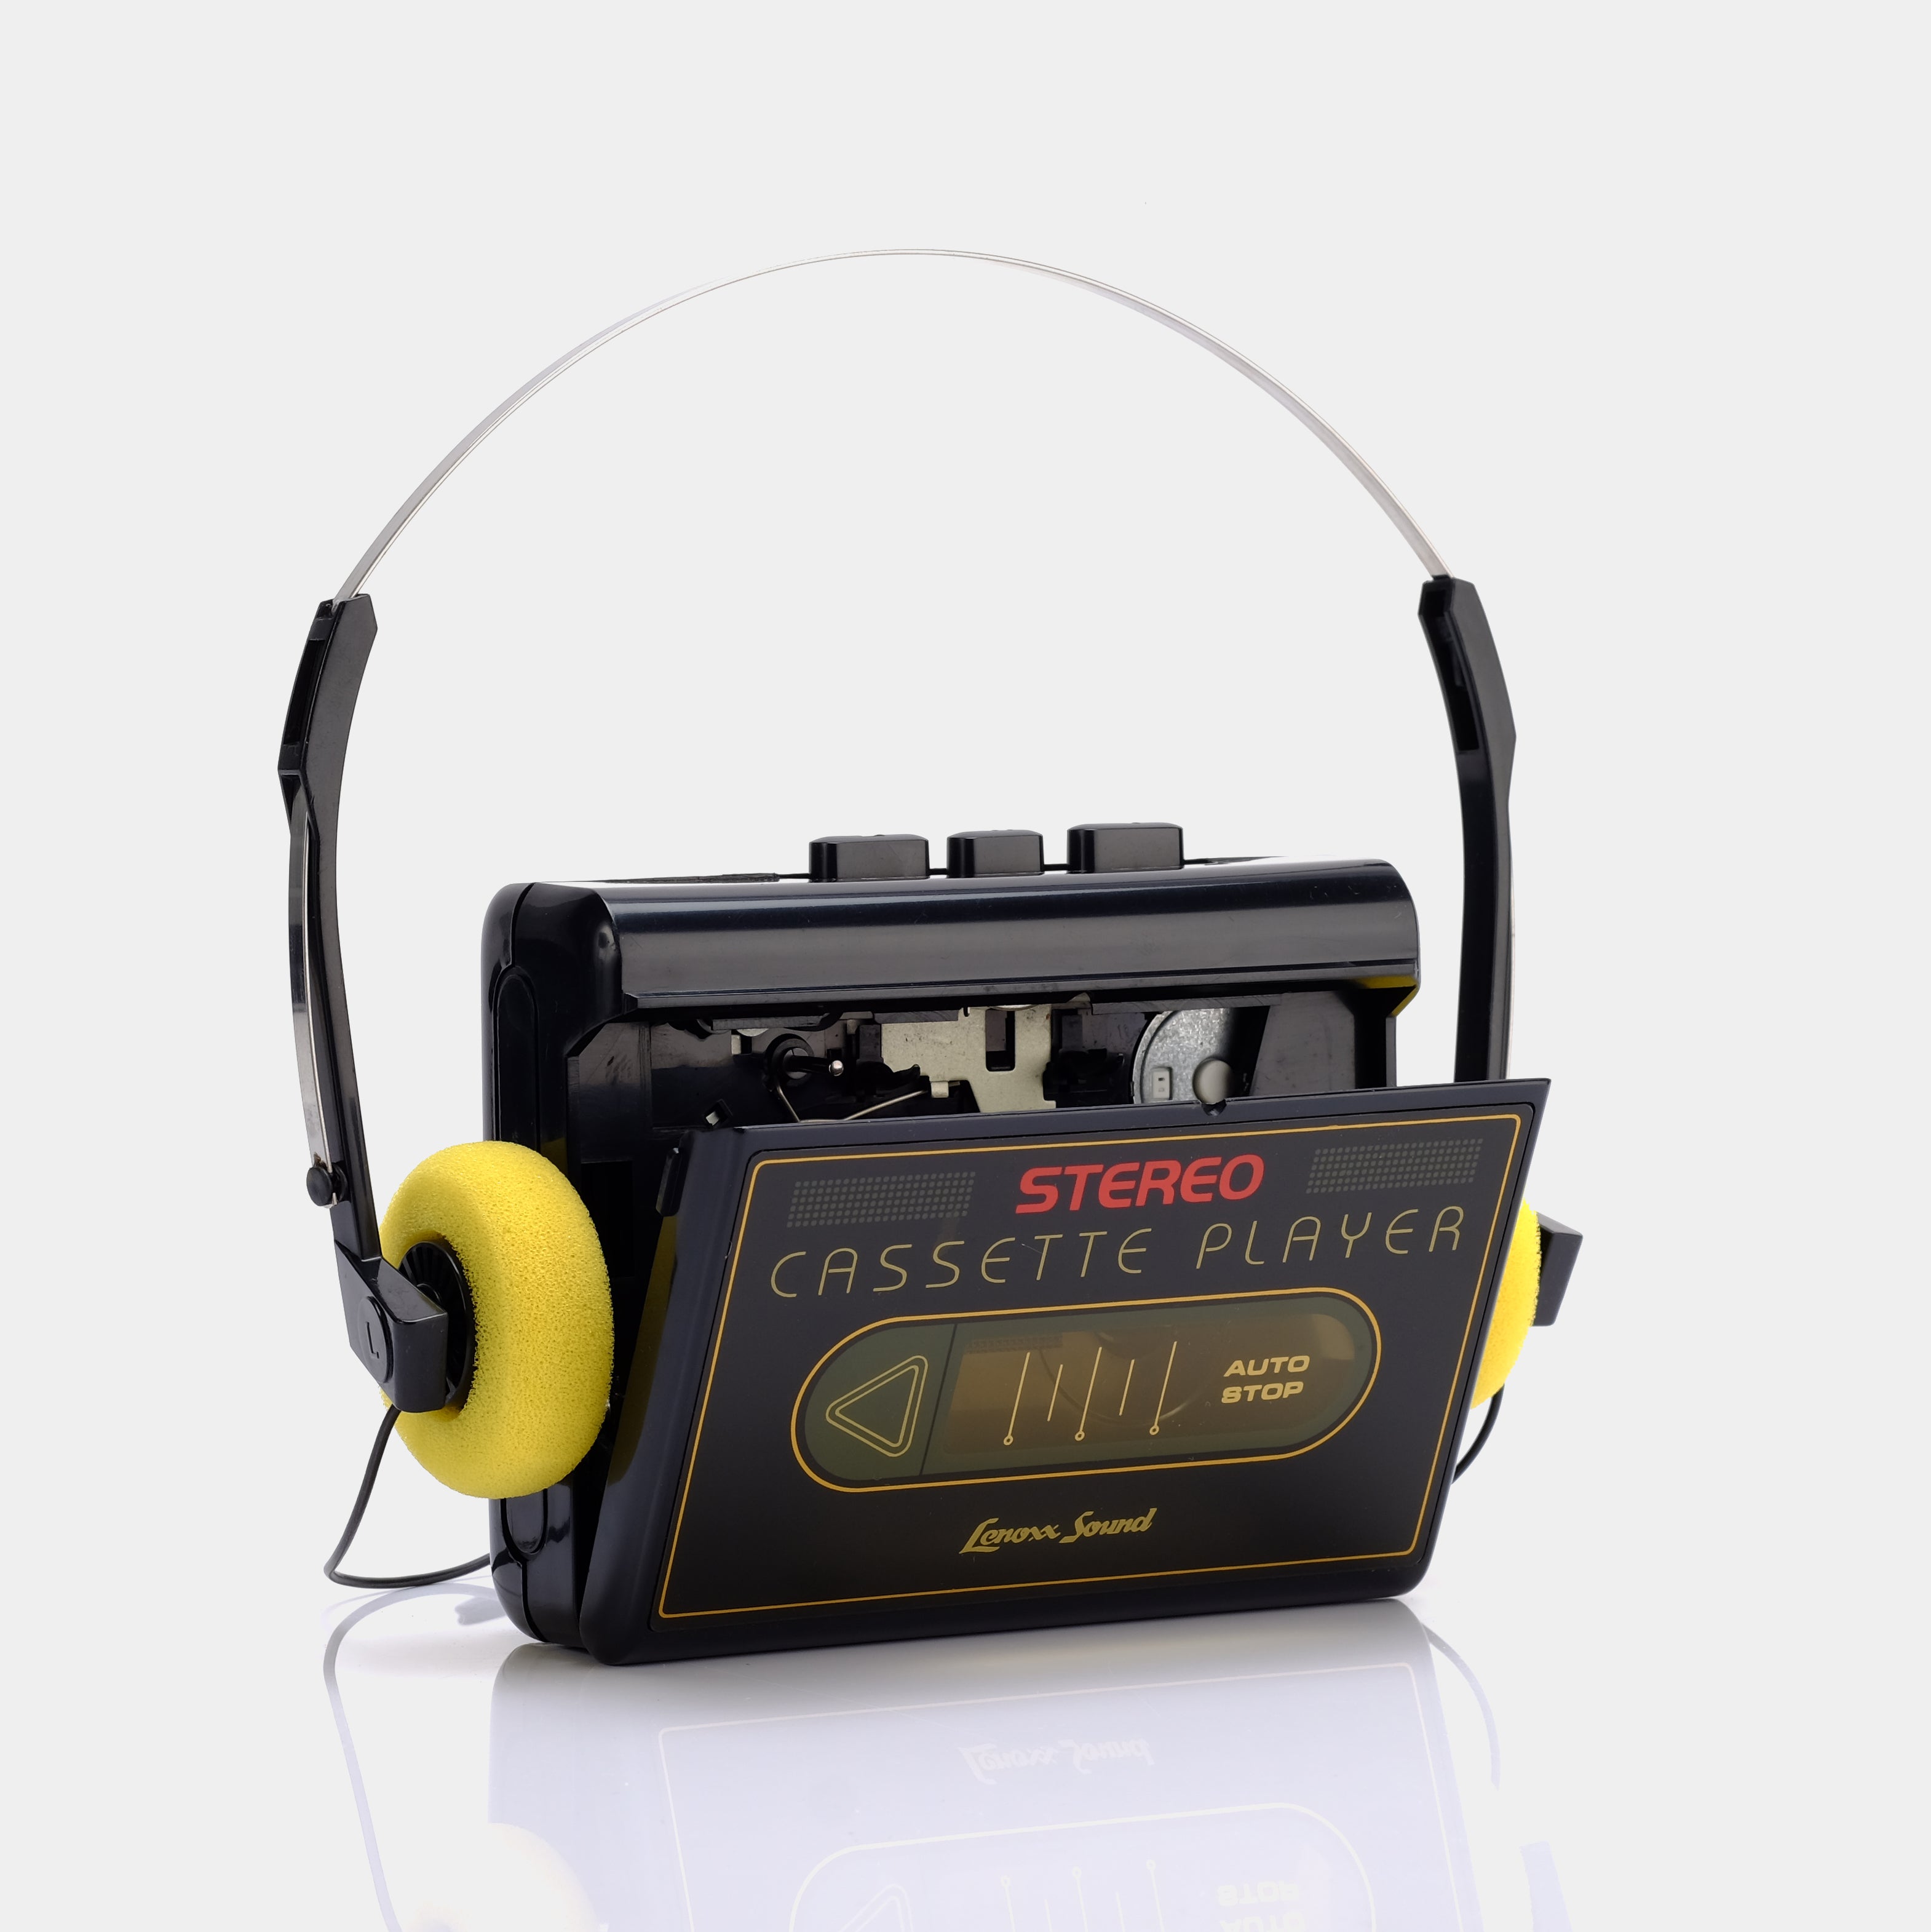 Lenoxx Sound Model 894 Portable Cassette Player